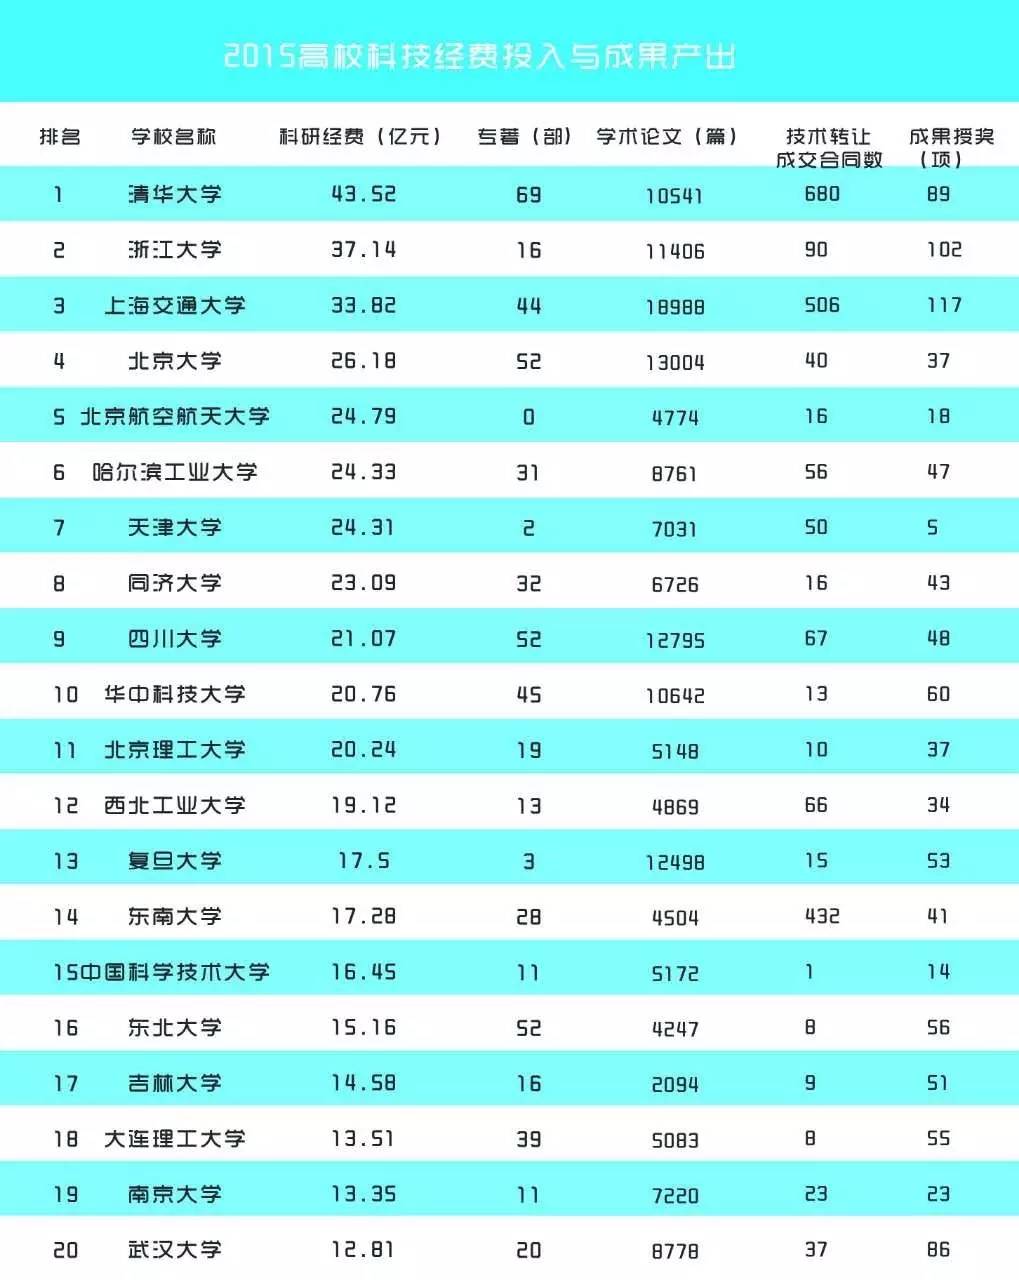 教育部公布高校科研排名,上海交大多项全国第